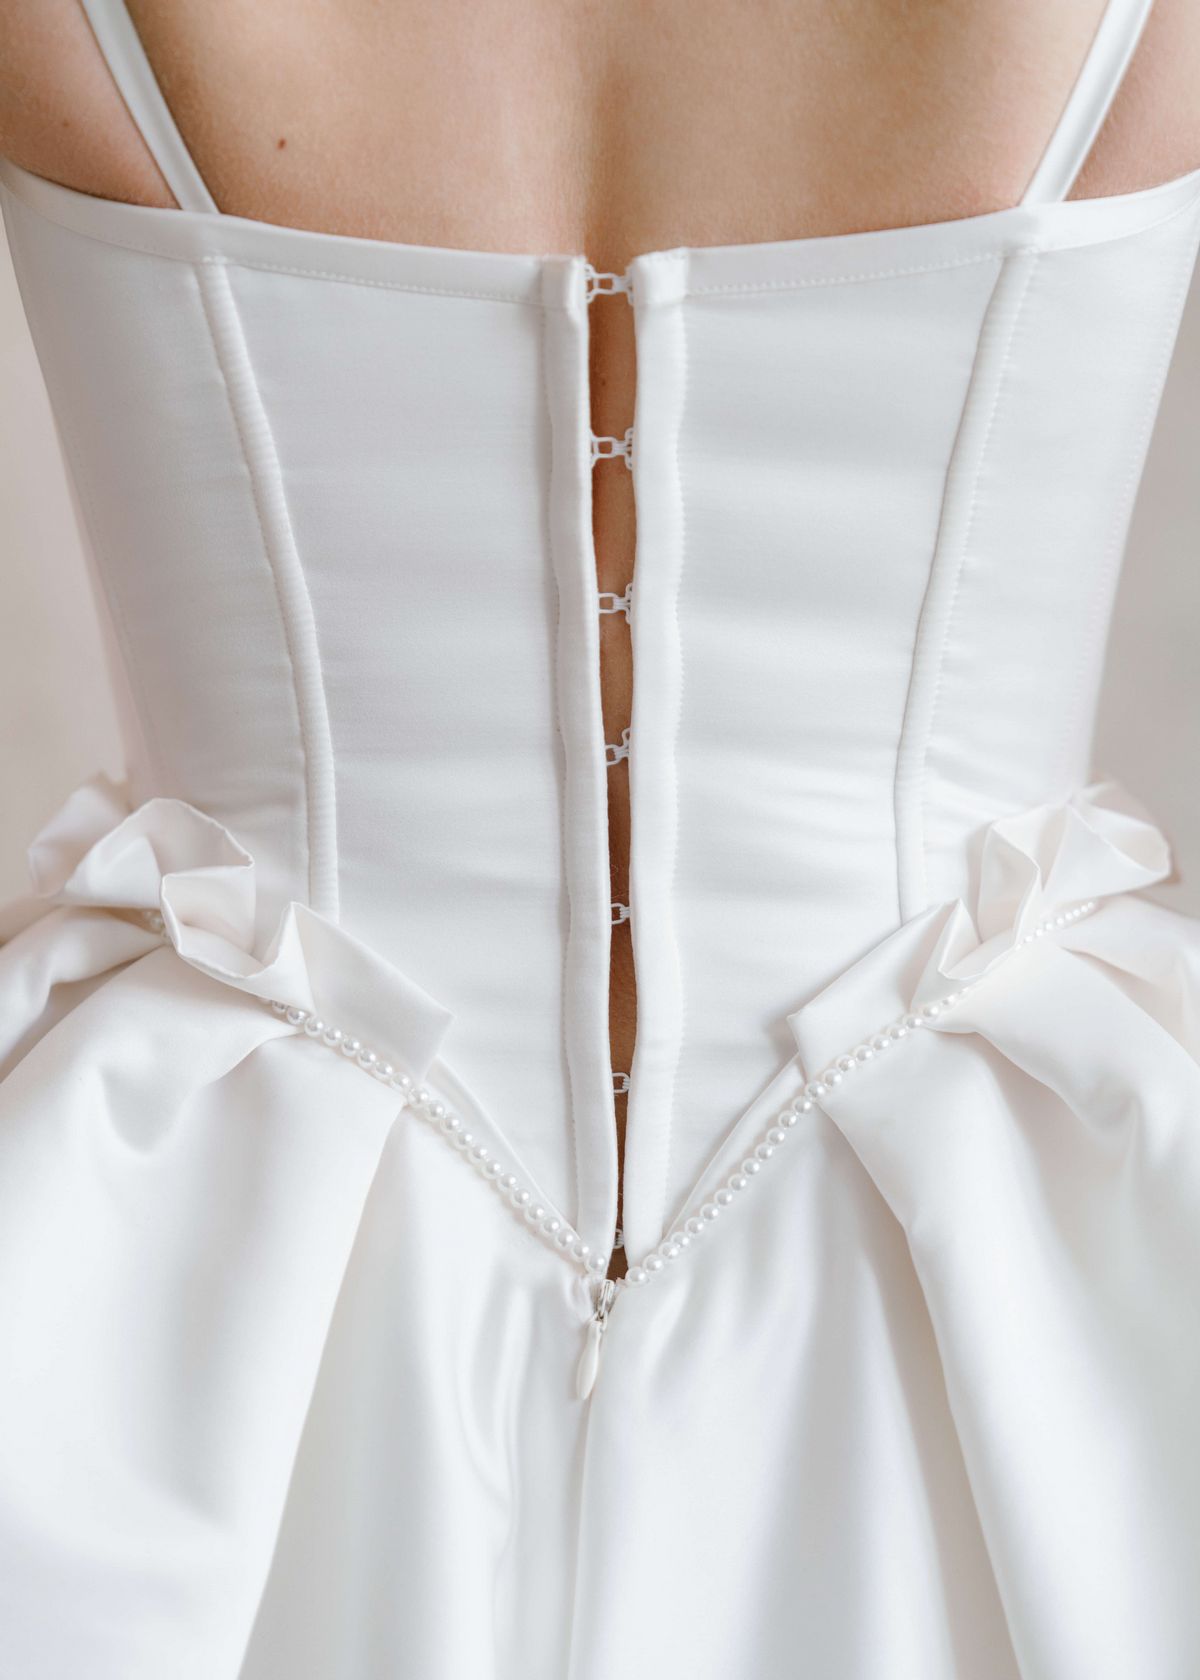 Rara Avis short corset wedding dress Shell at Dell'Amore, Auckland, NZ.8